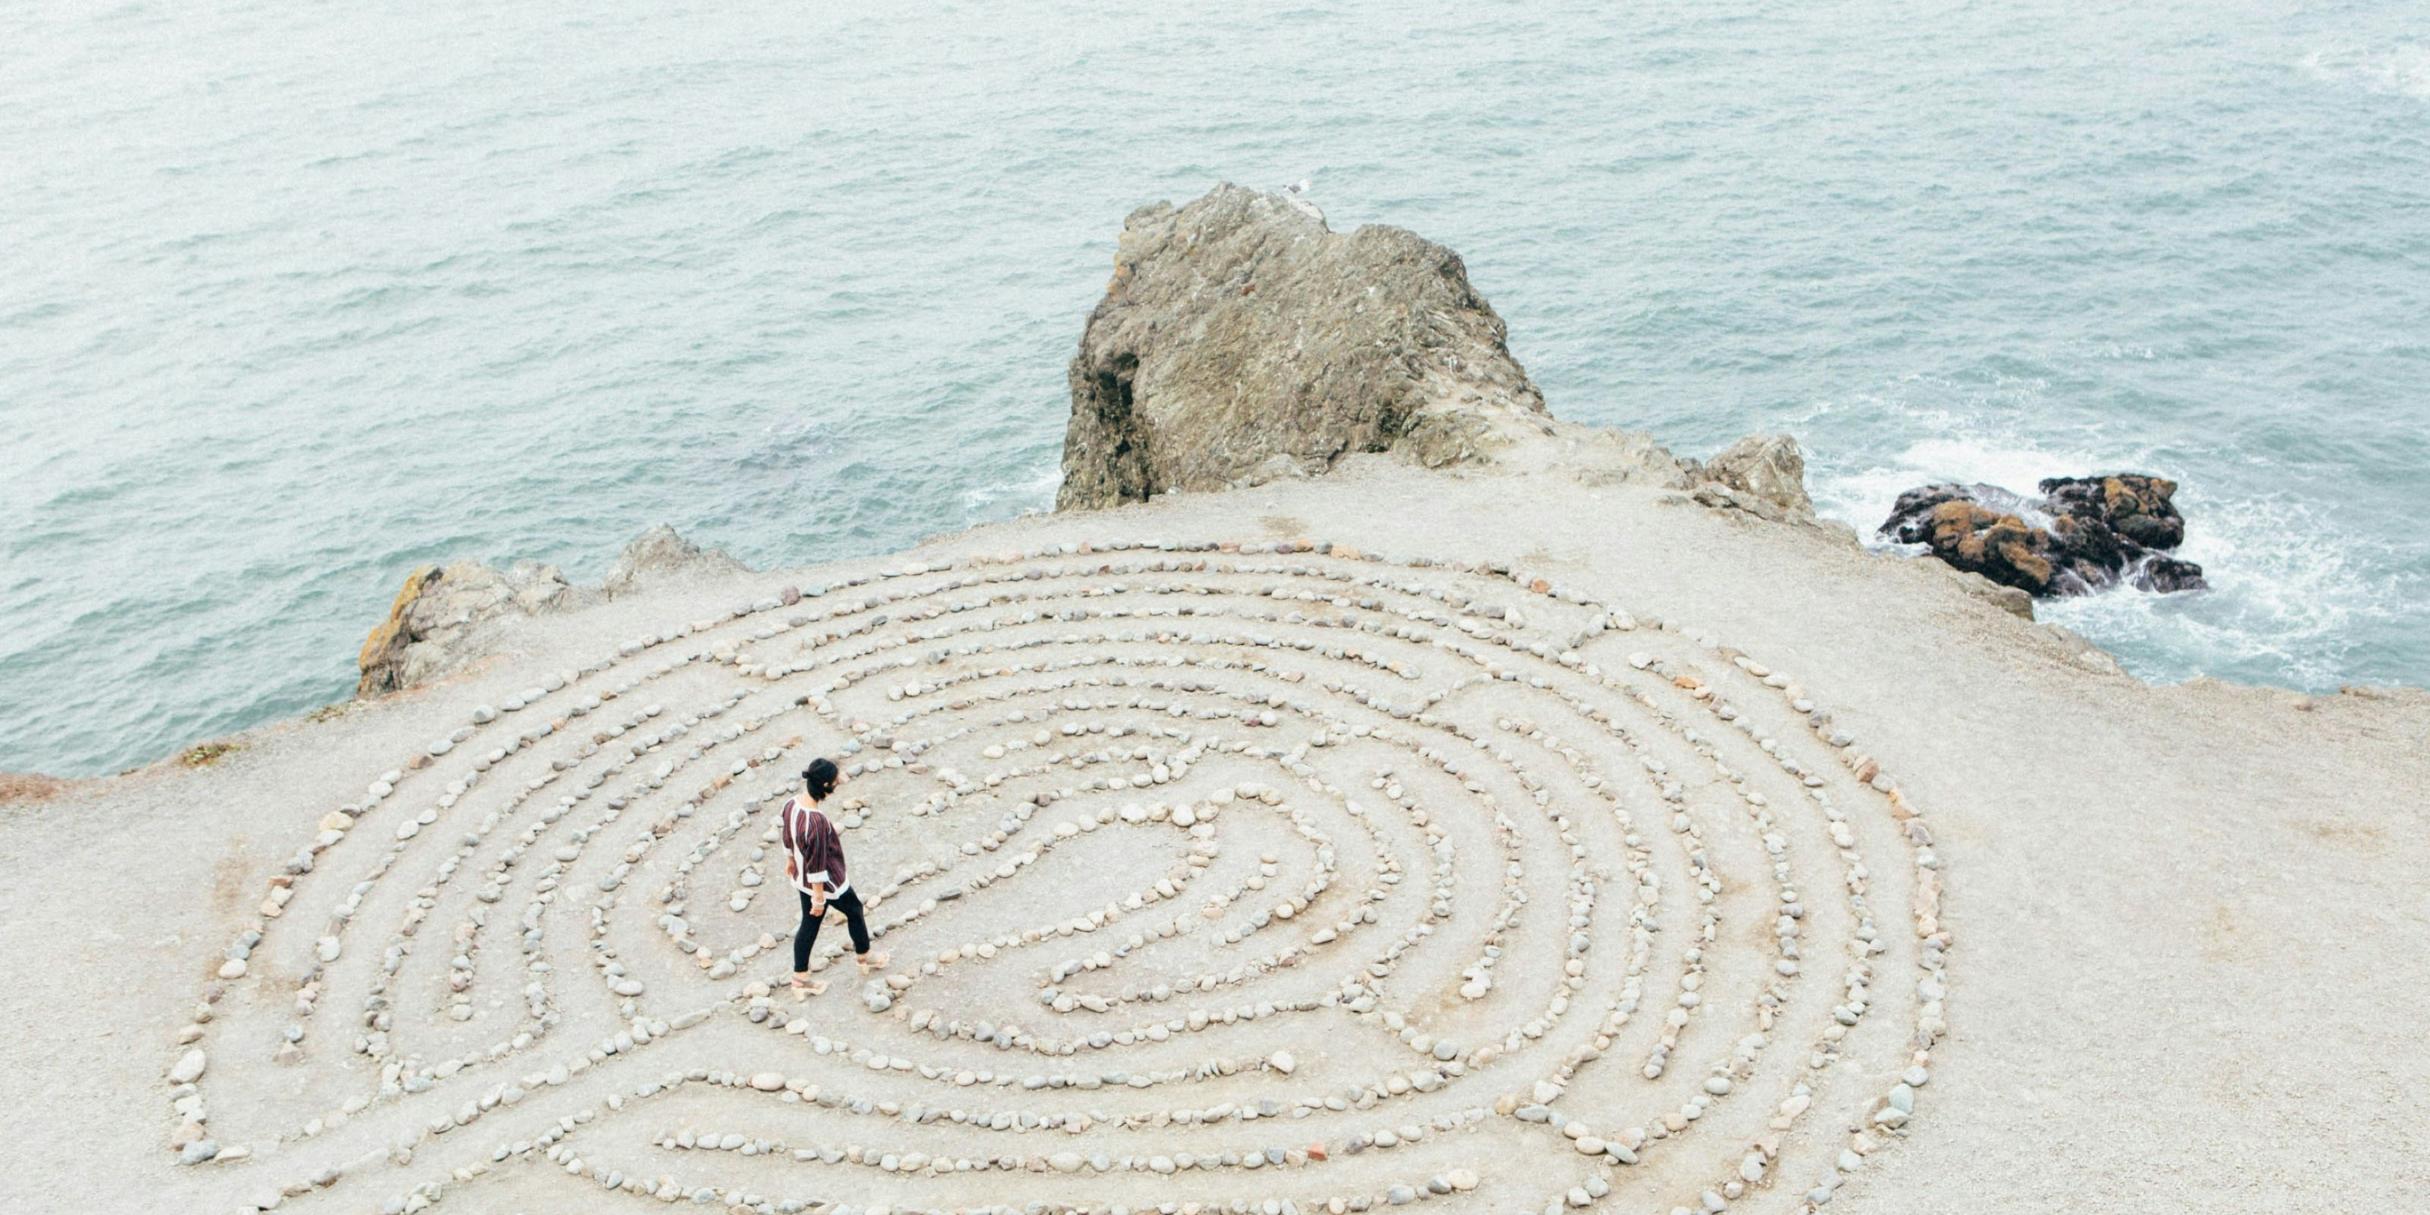 Eine Frau geht durch ein kreisförmiges Labyrinth am Strand, welches aus Steinen gelegt wurde